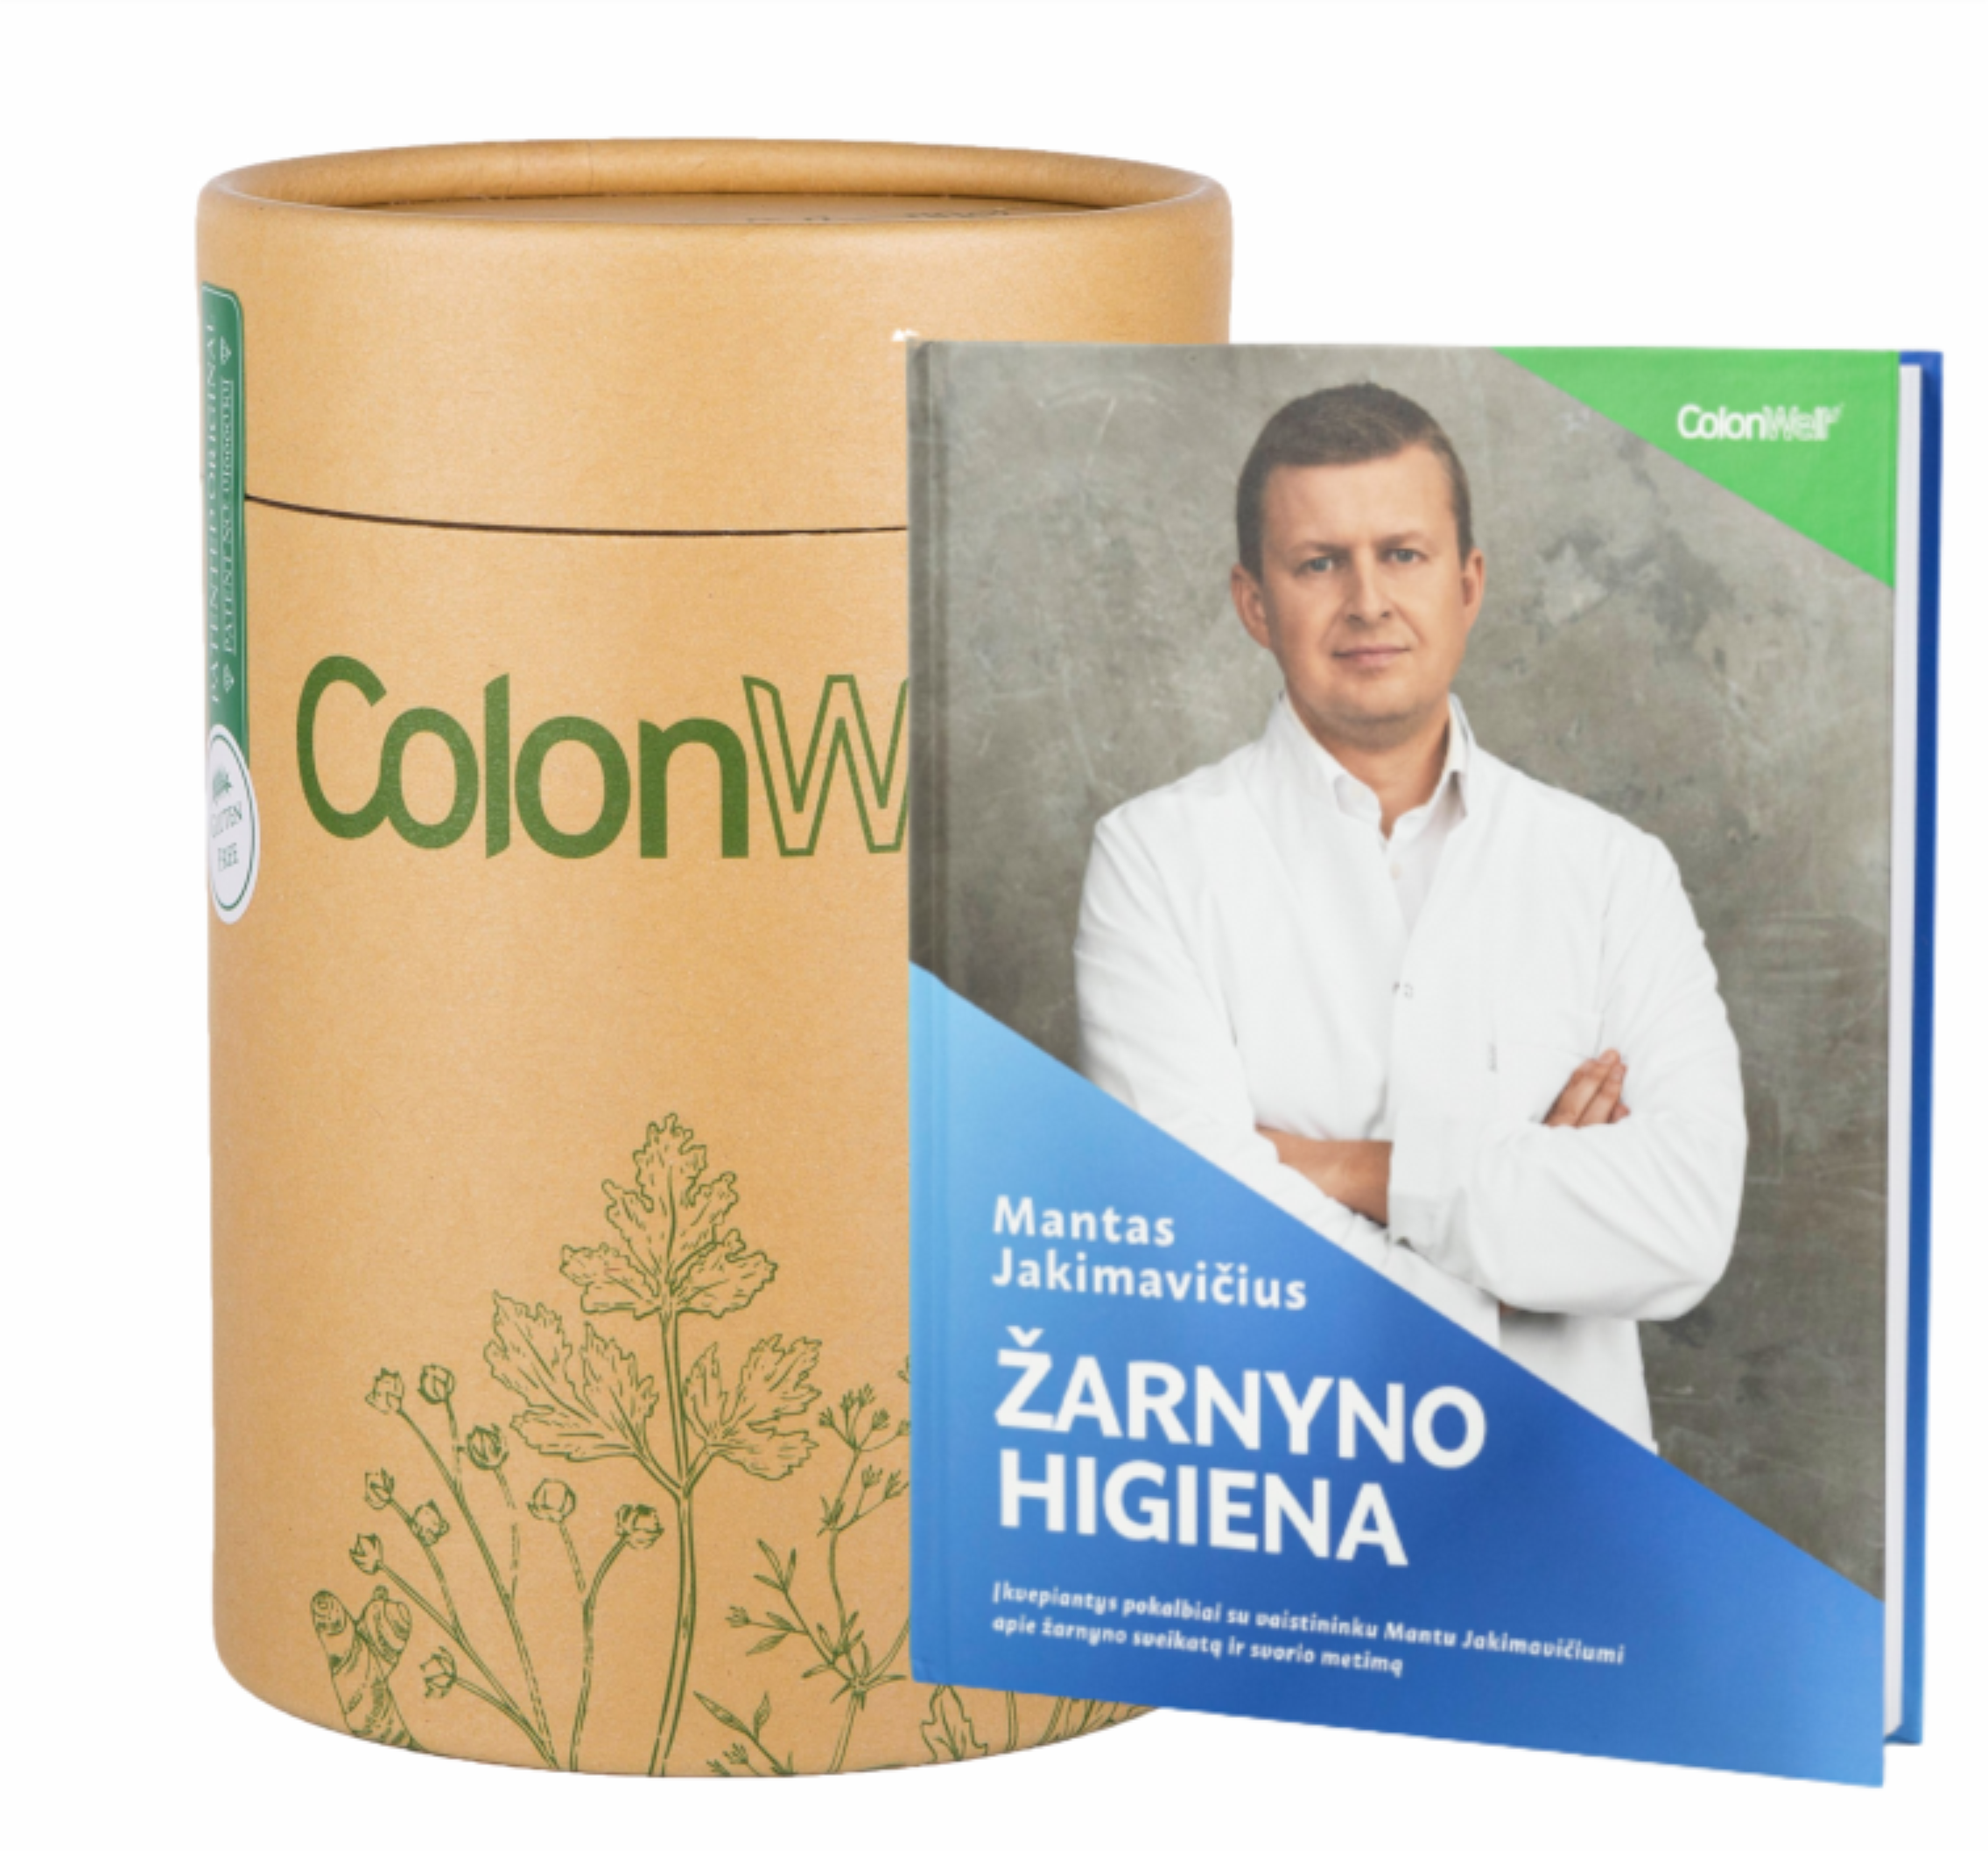 Colonwell.lt produktas - ColonWell - žolelių ir sėklų mišinys (natūralaus skonio) 400g. + Knyga - žarnyno higiena